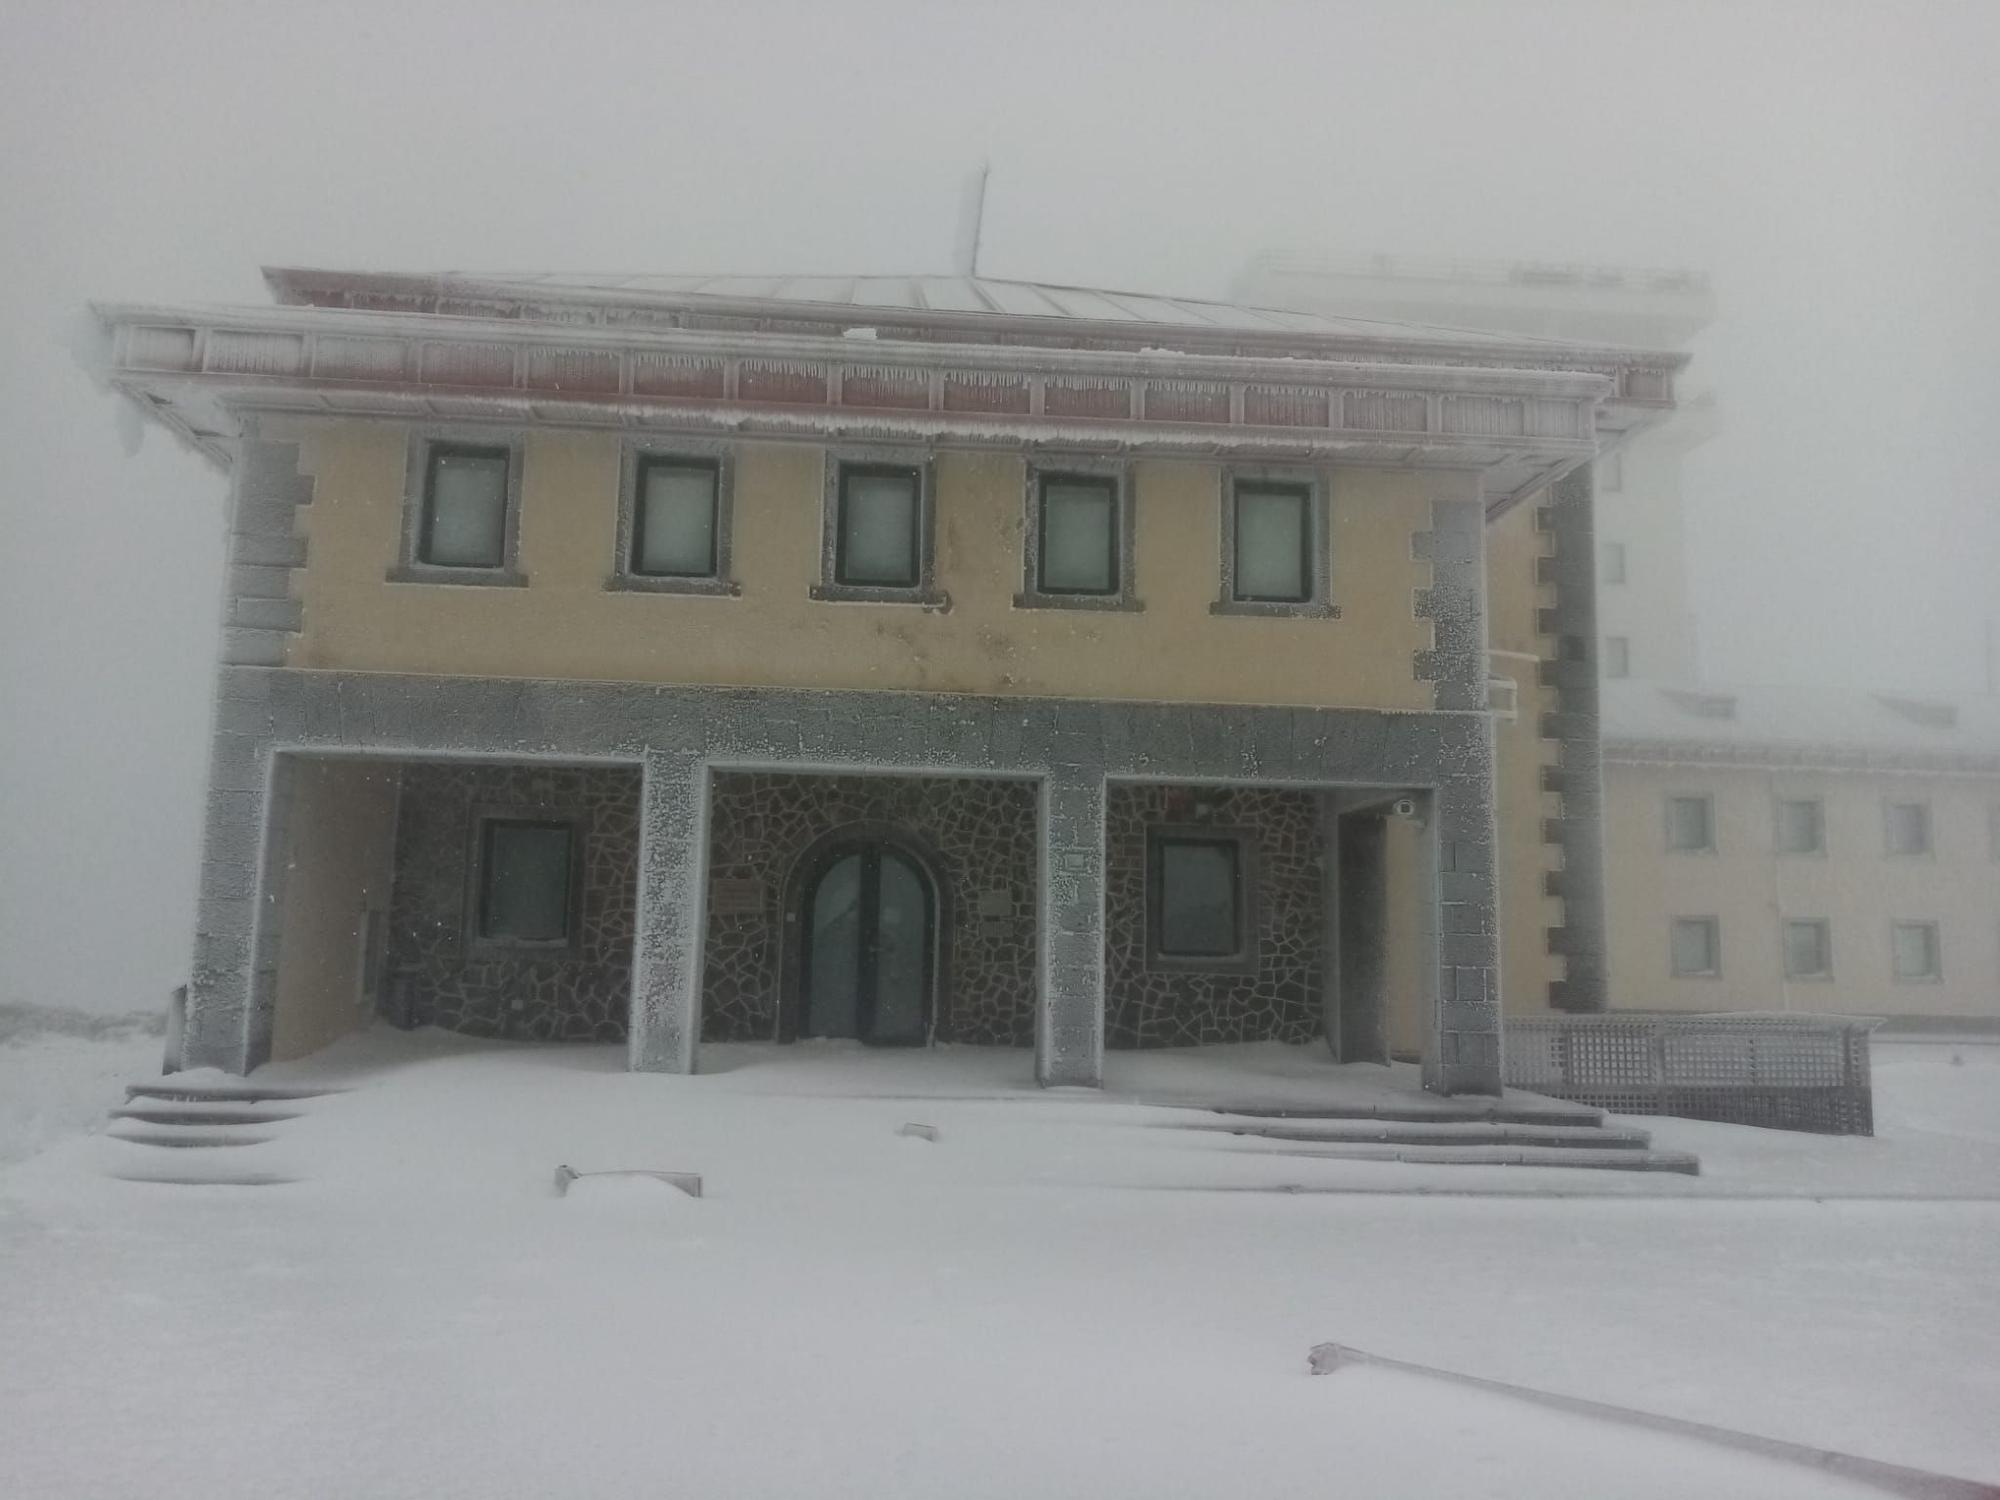 El centro meterológico de Izaña, bloqueado por el hielo y la nieve